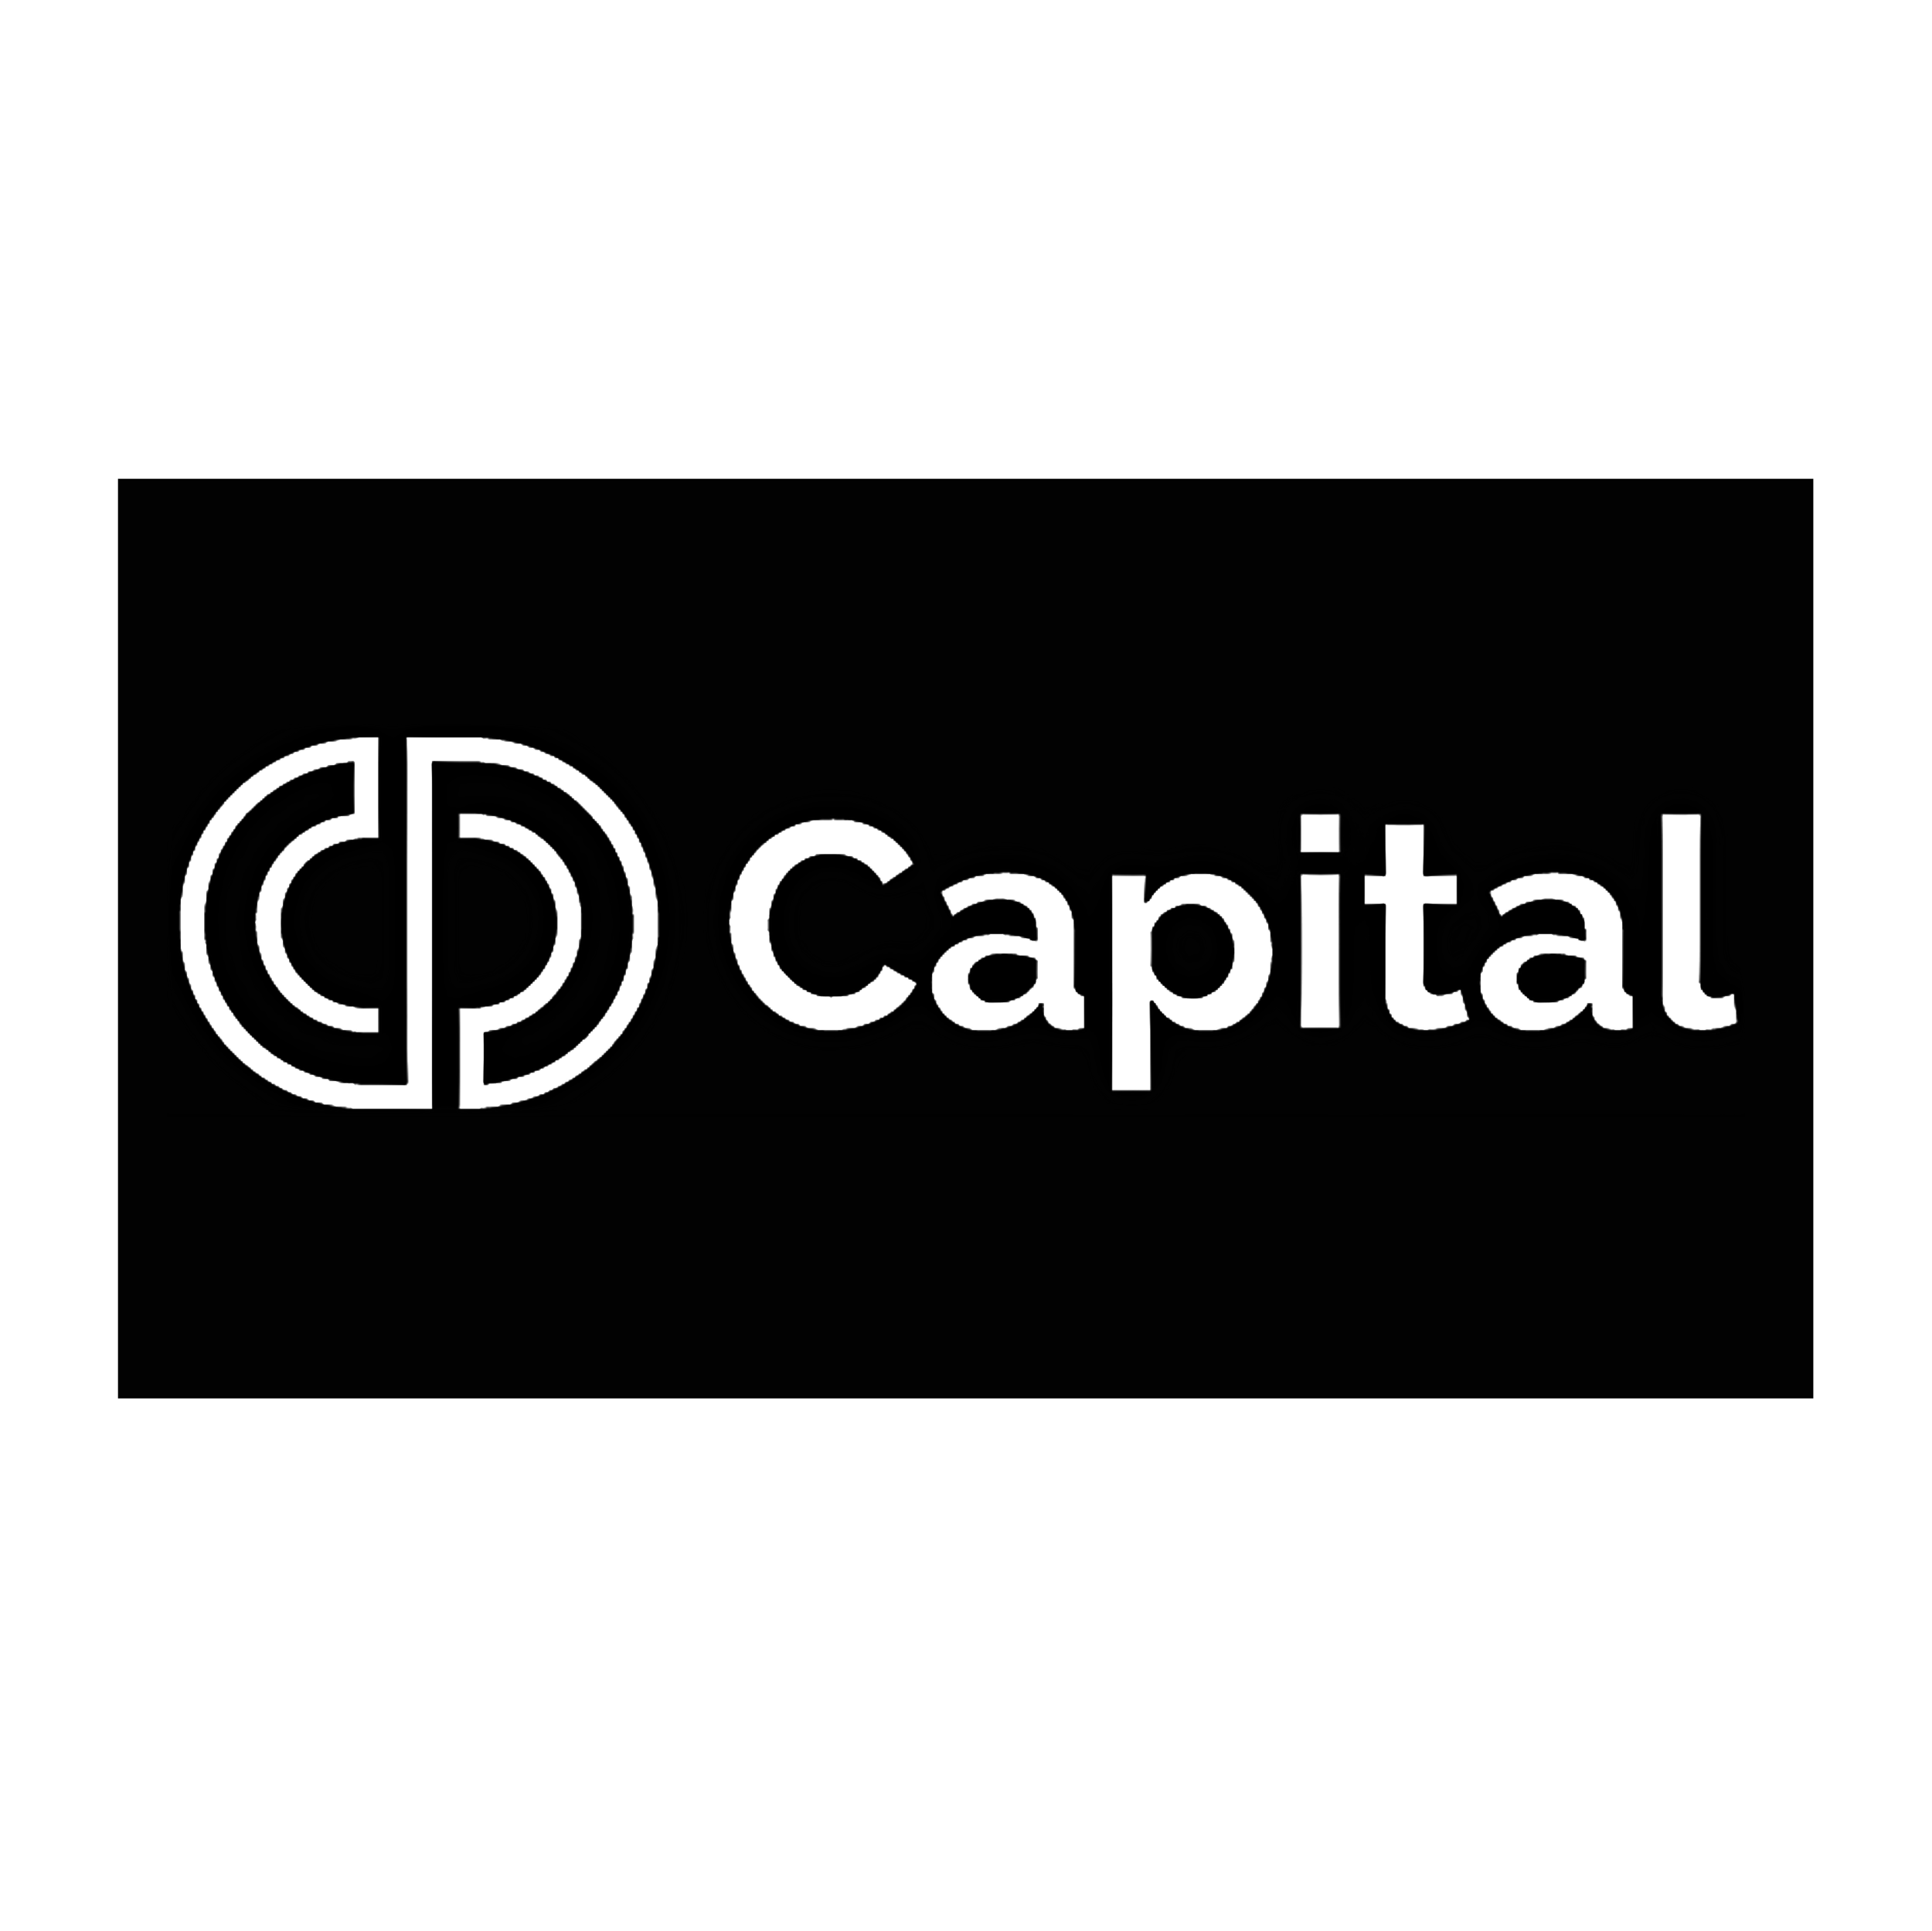 C&D Capital adjust.png